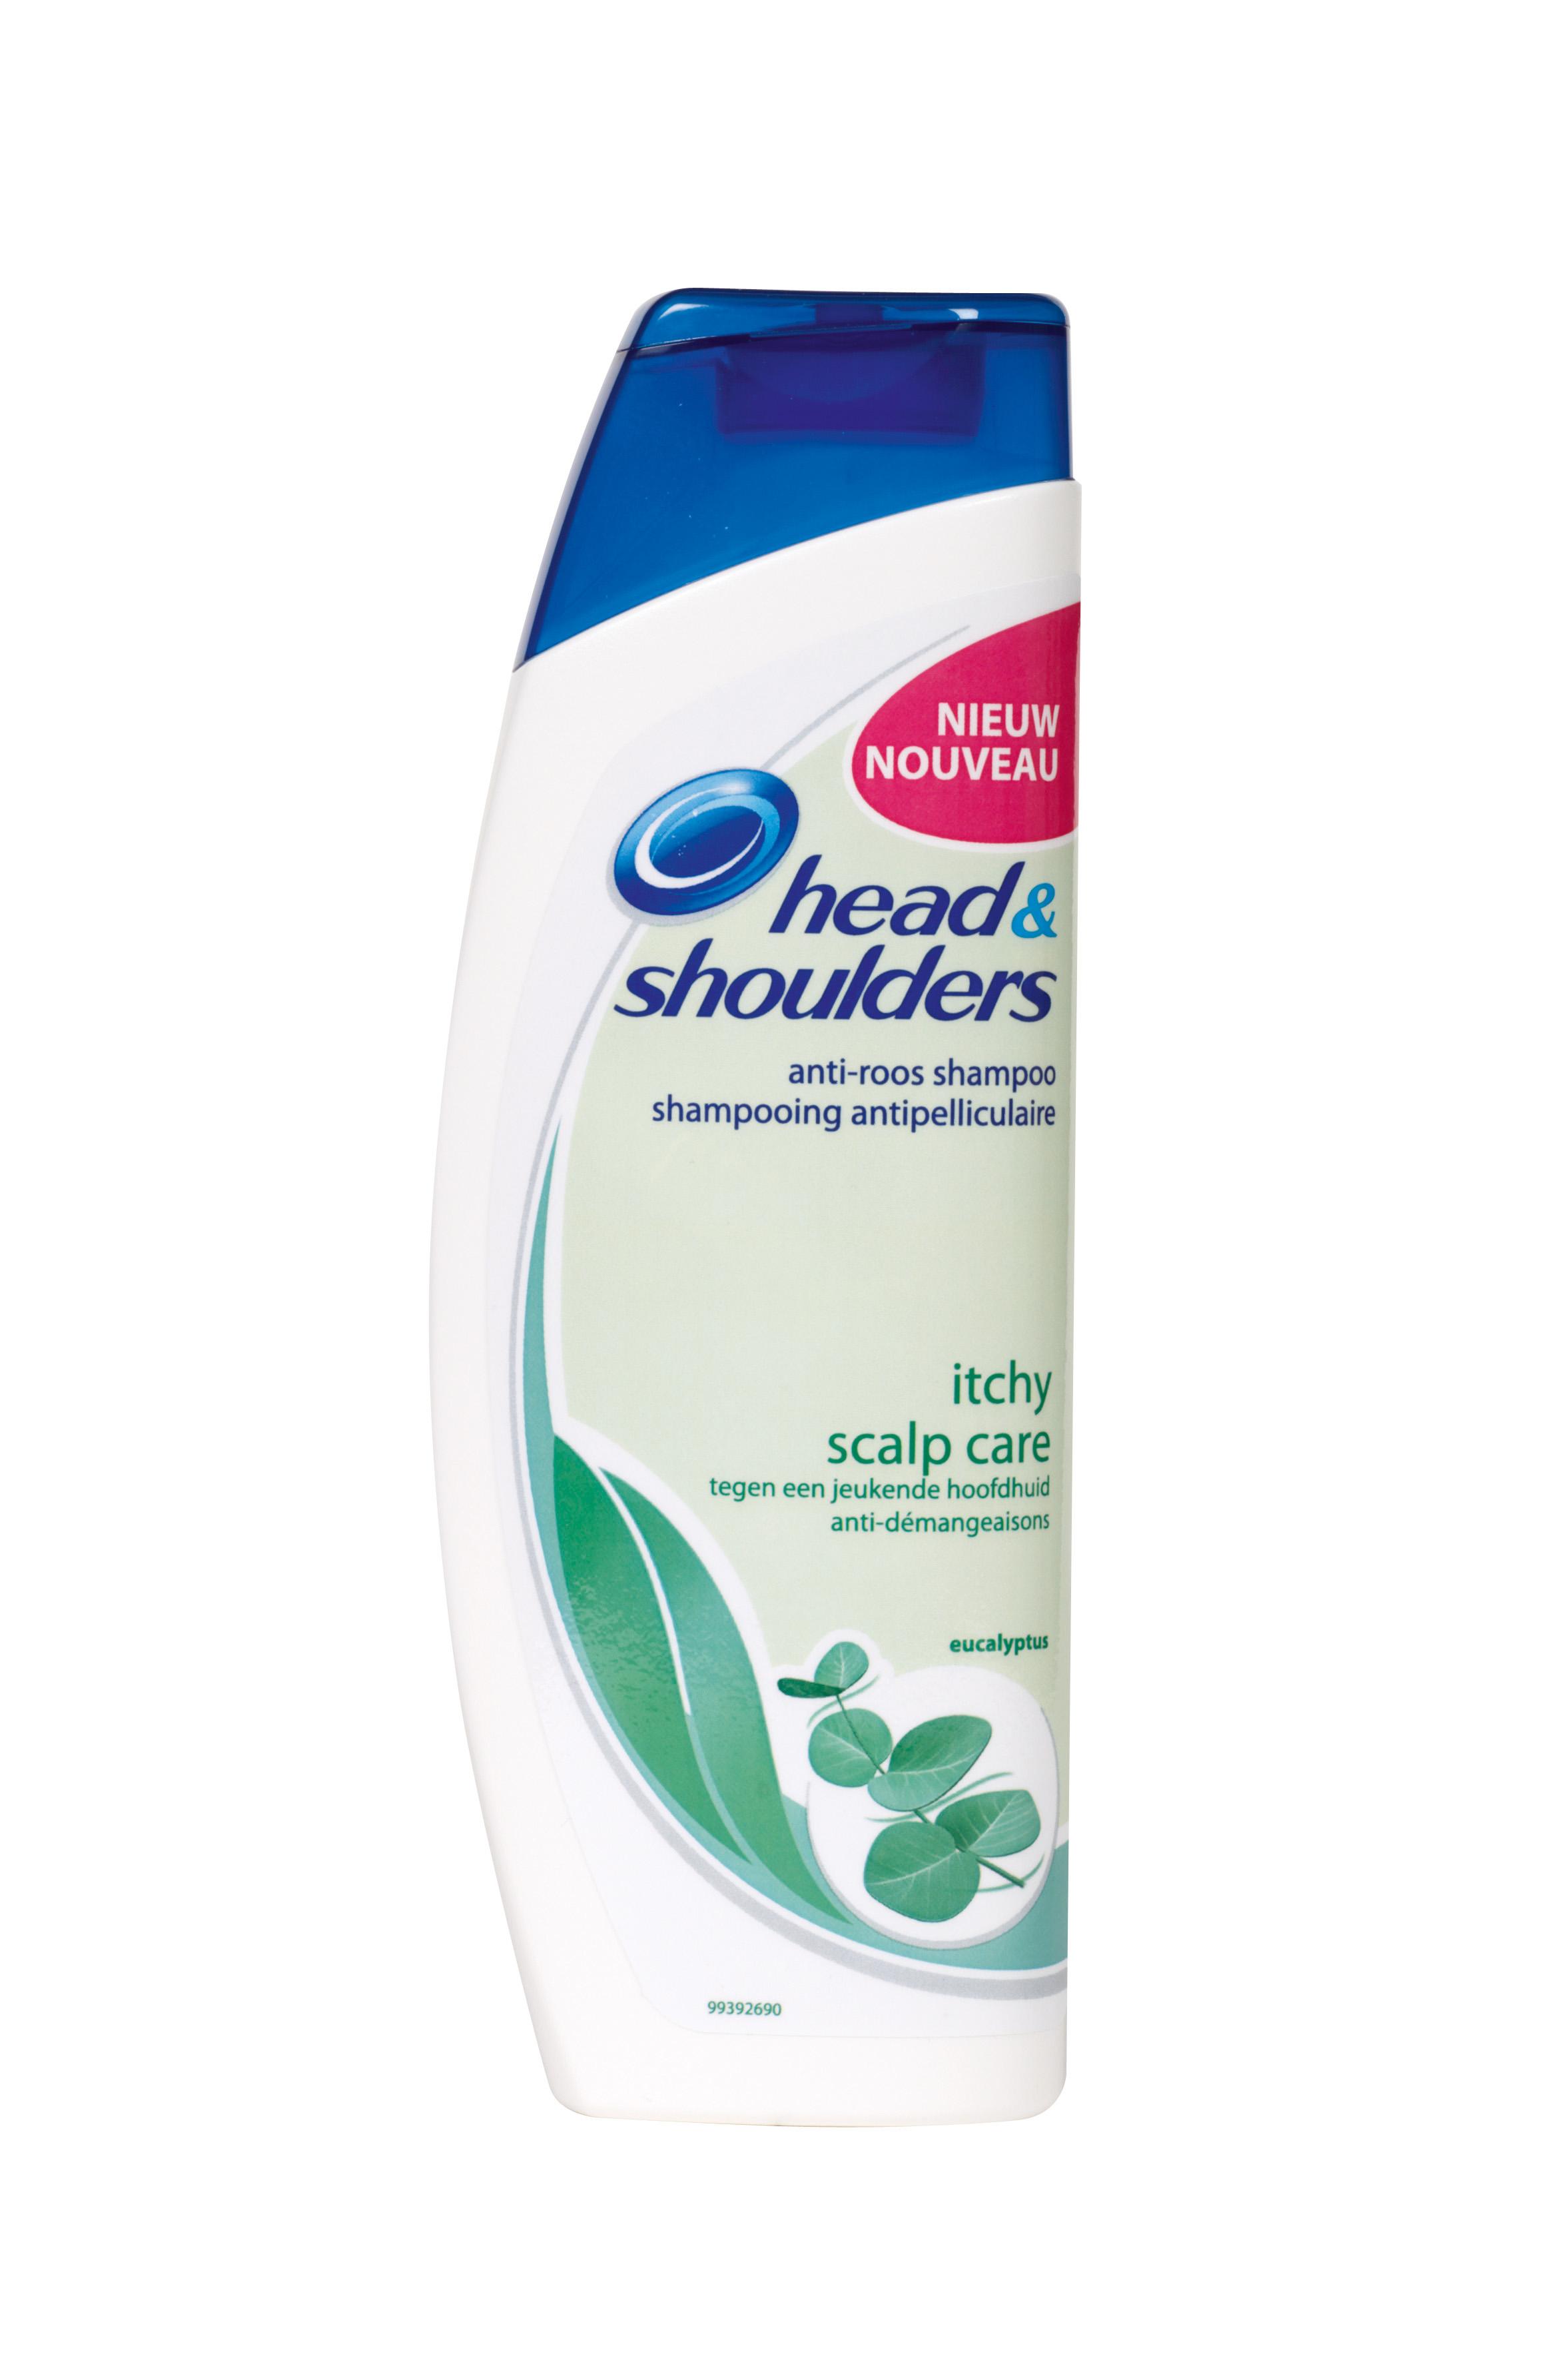 Head & shoulders Itchy Scalp Shampoo